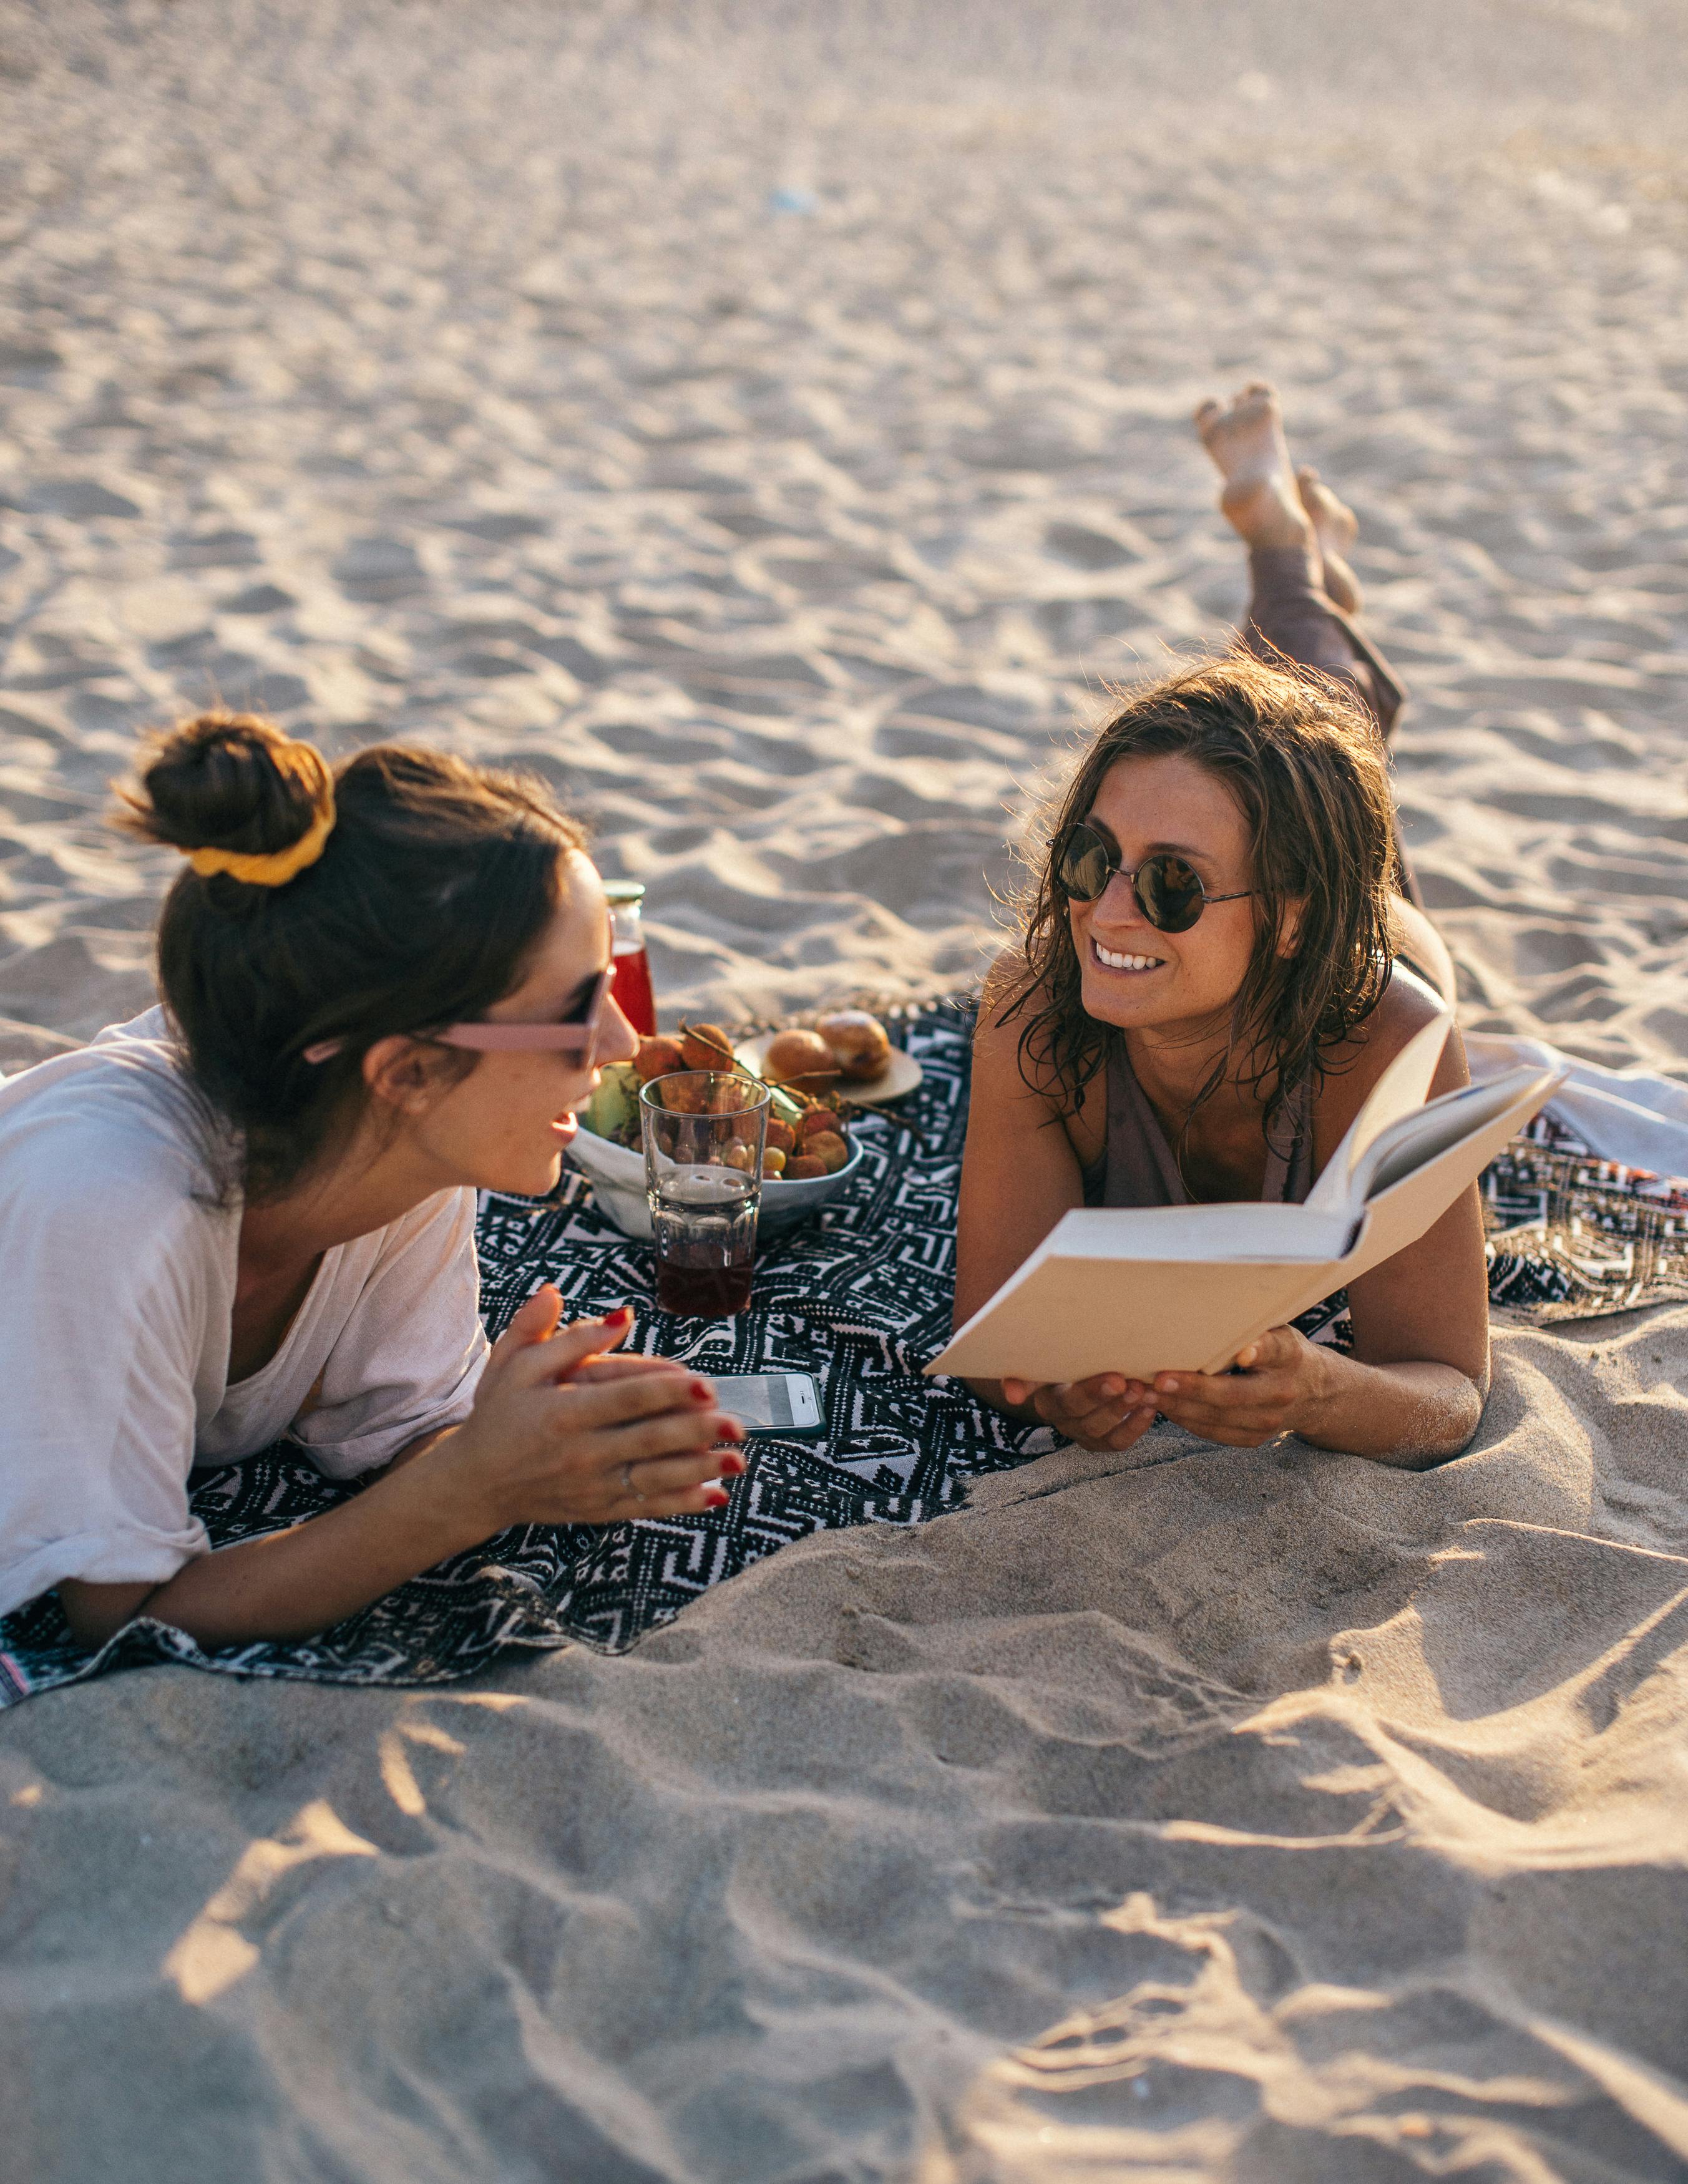 Les meilleures amies discutent sur la plage | Source : Anna Tarazevich sur Pexels